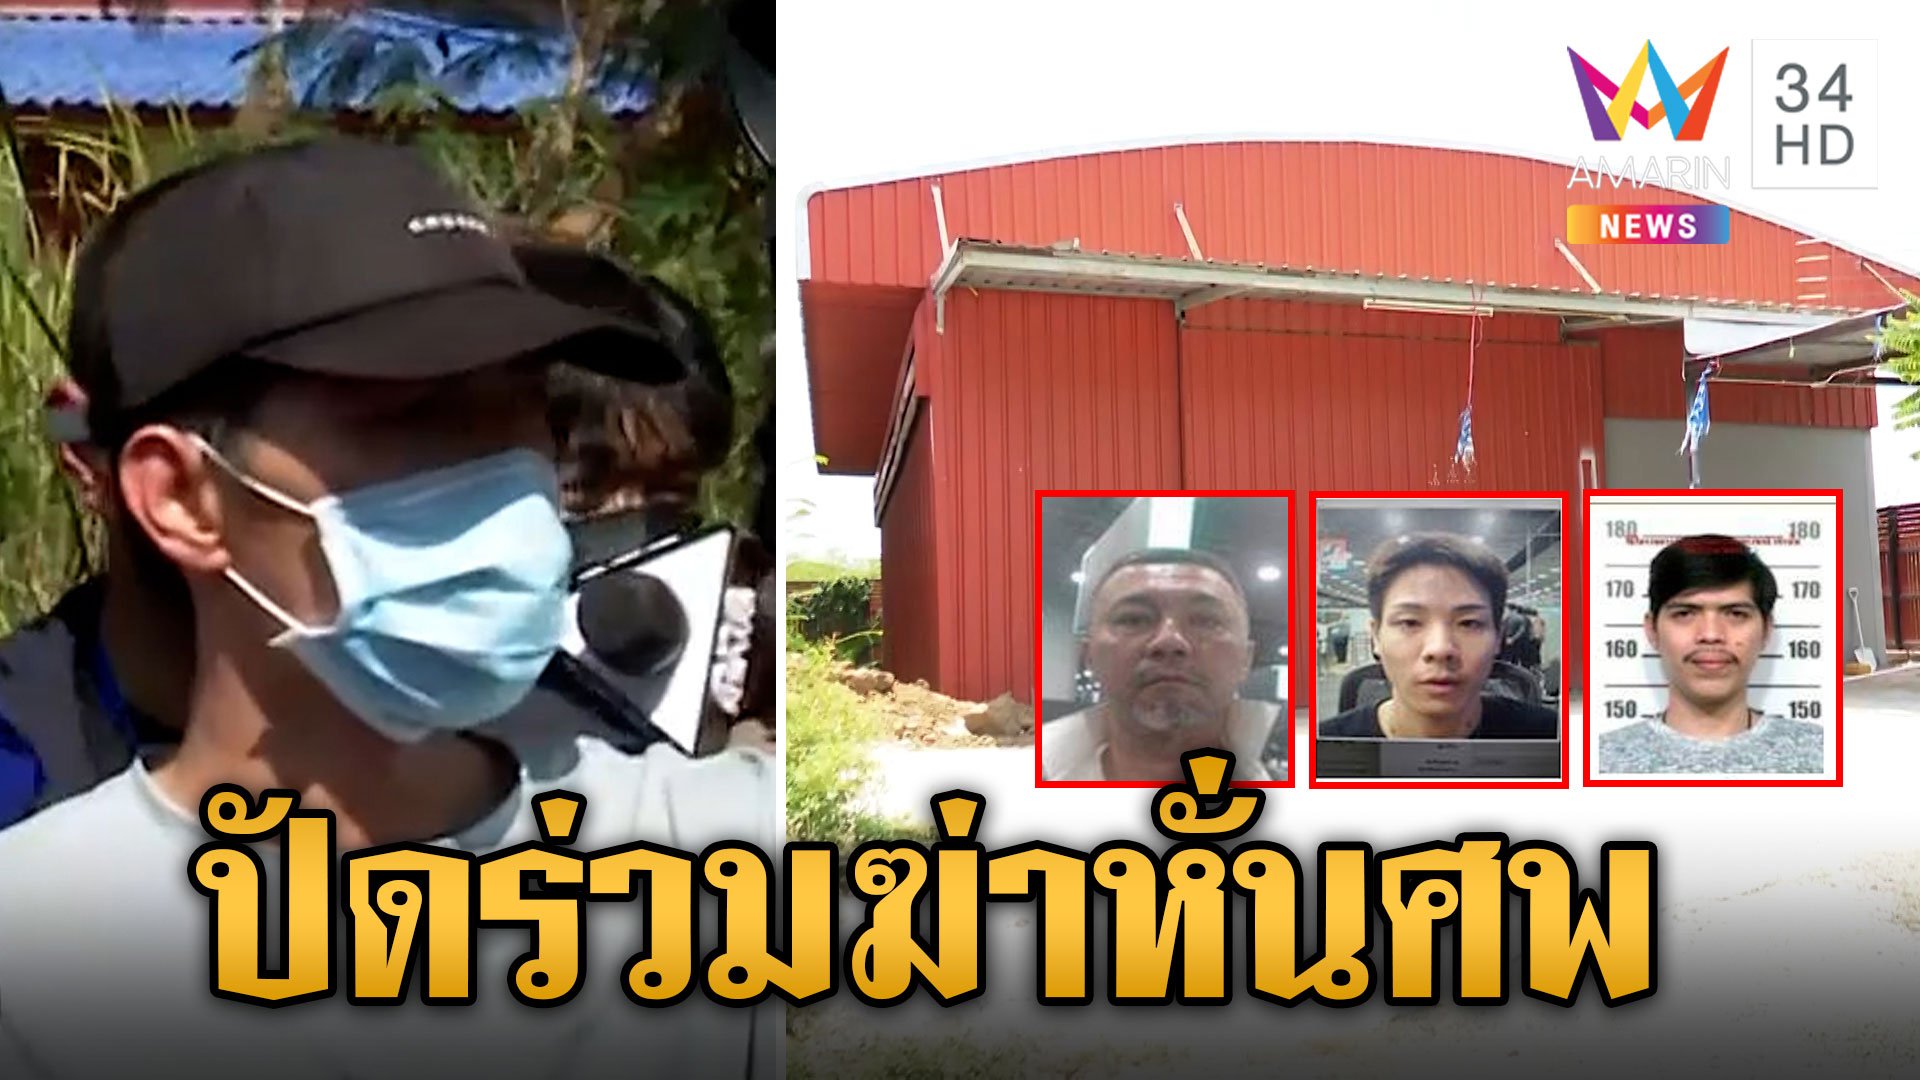 ฝากขัง "เกมส์" คดีฆ่าหั่นศพ ตร. ปัดตอบ 2 ยากูซ่า ยังอยู่ในไทยหรือไม่  | ข่าวเย็นอมรินทร์ | 25 เม.ย. 67 | AMARIN TVHD34